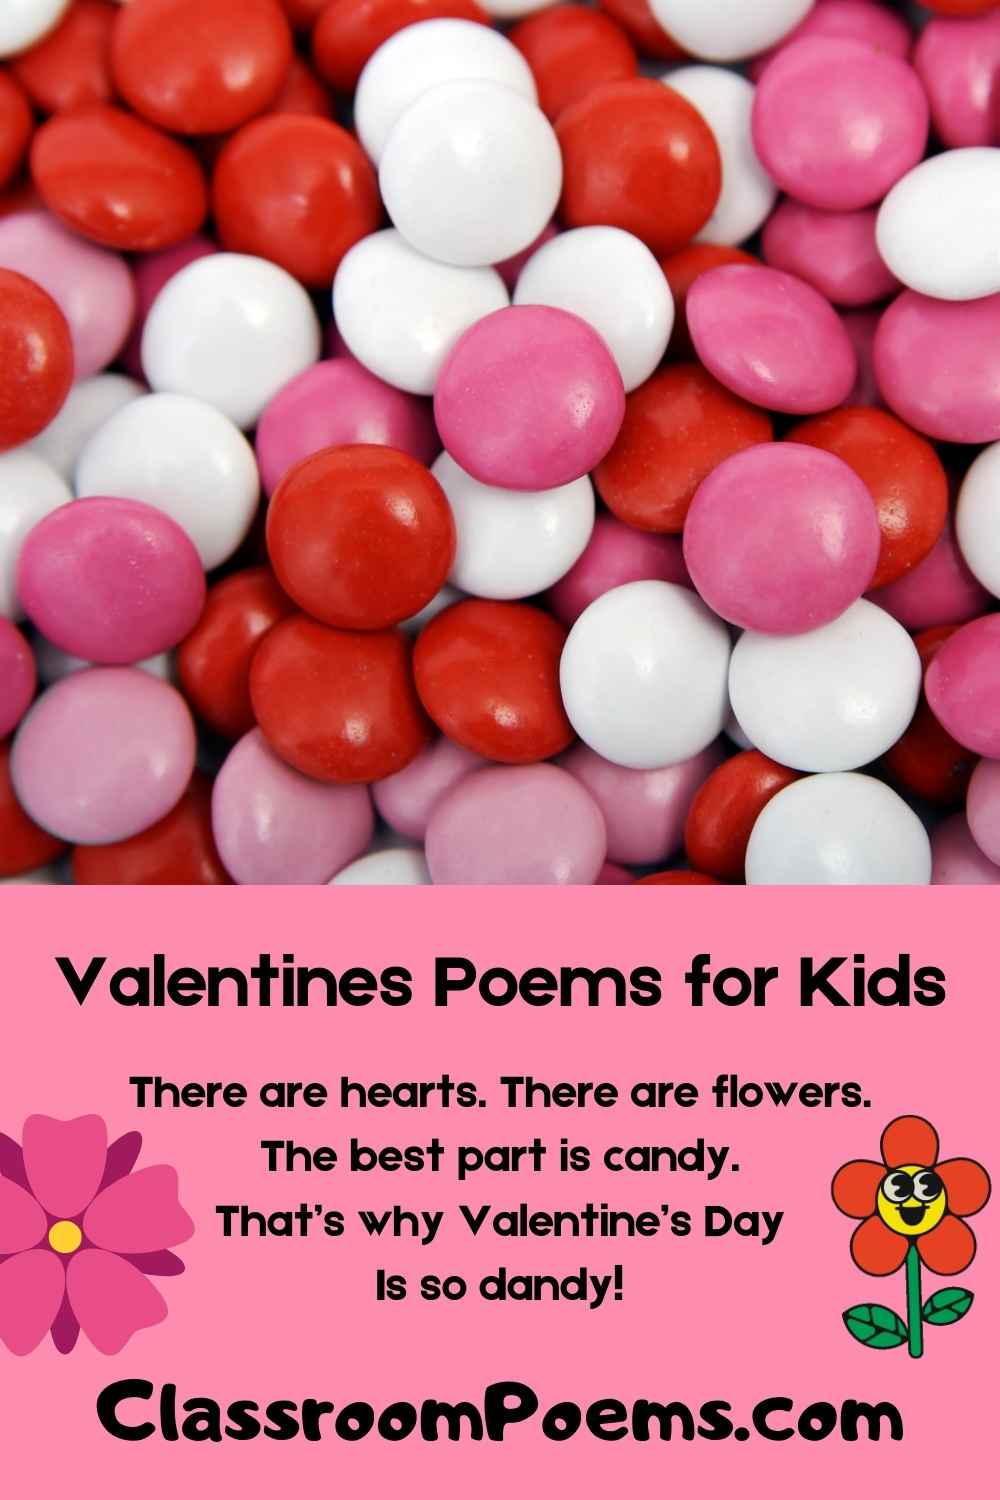 Valentines poems for kids, Valentines poems for school kids, Valentine poems for home school, Valentines poems for home schooling,